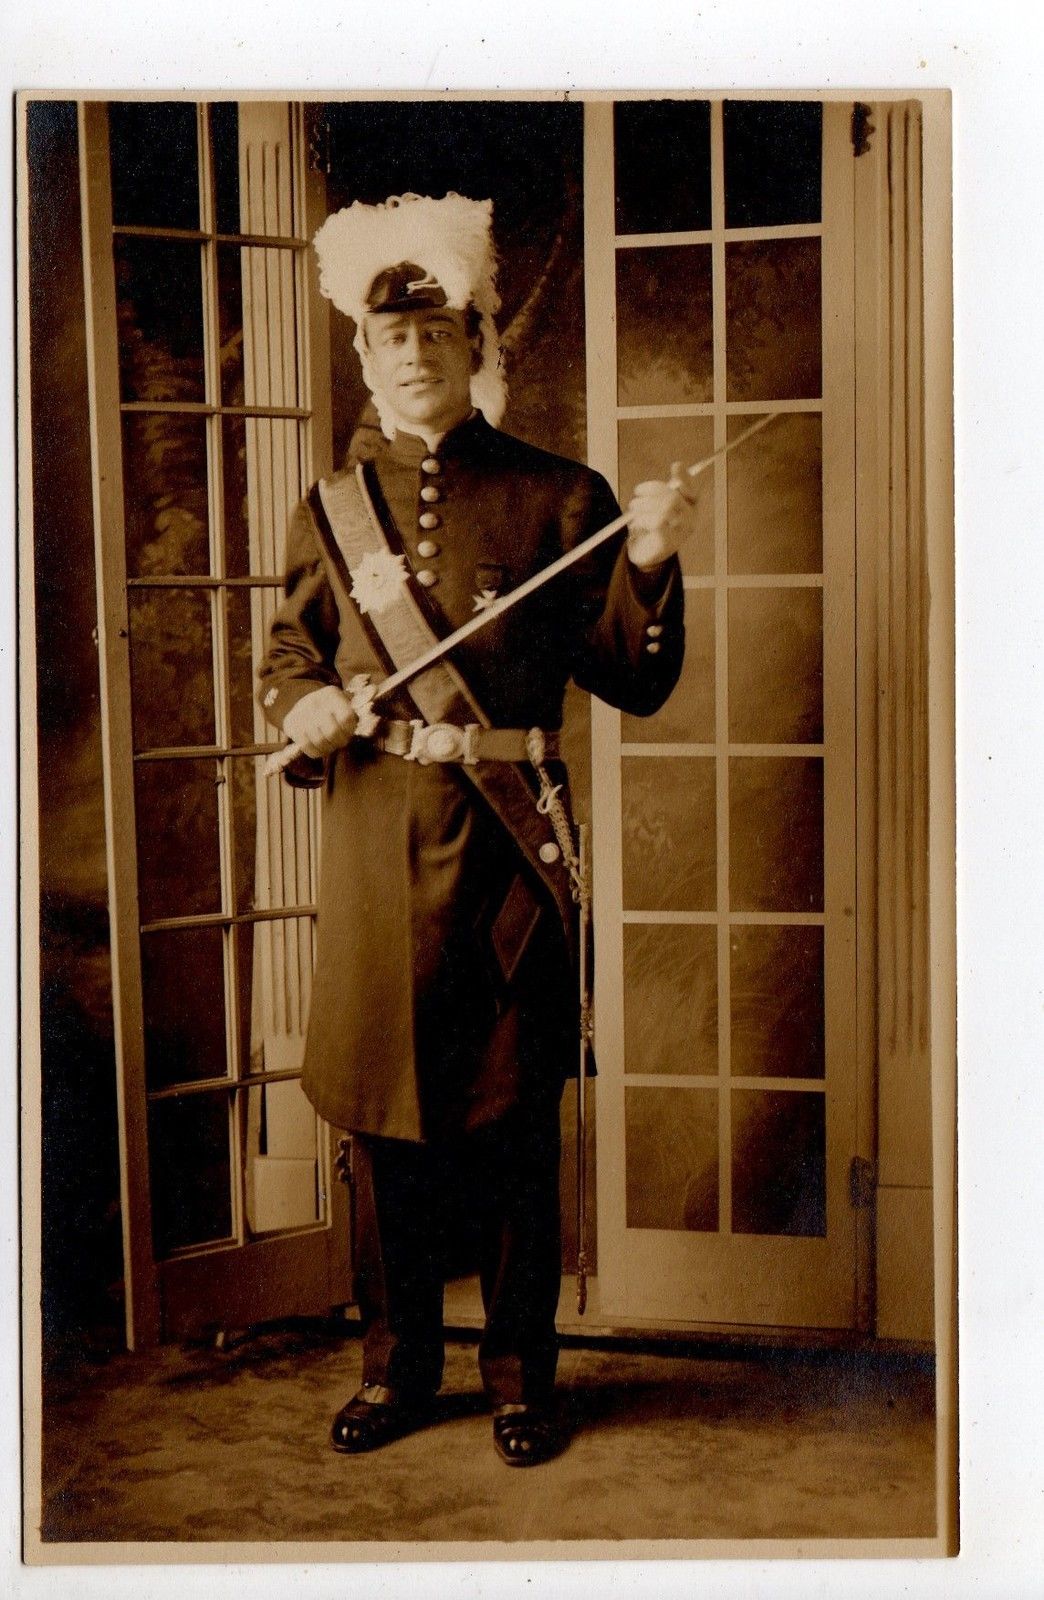 Atlantic City - Studio shot of band member in uniform - c 1910